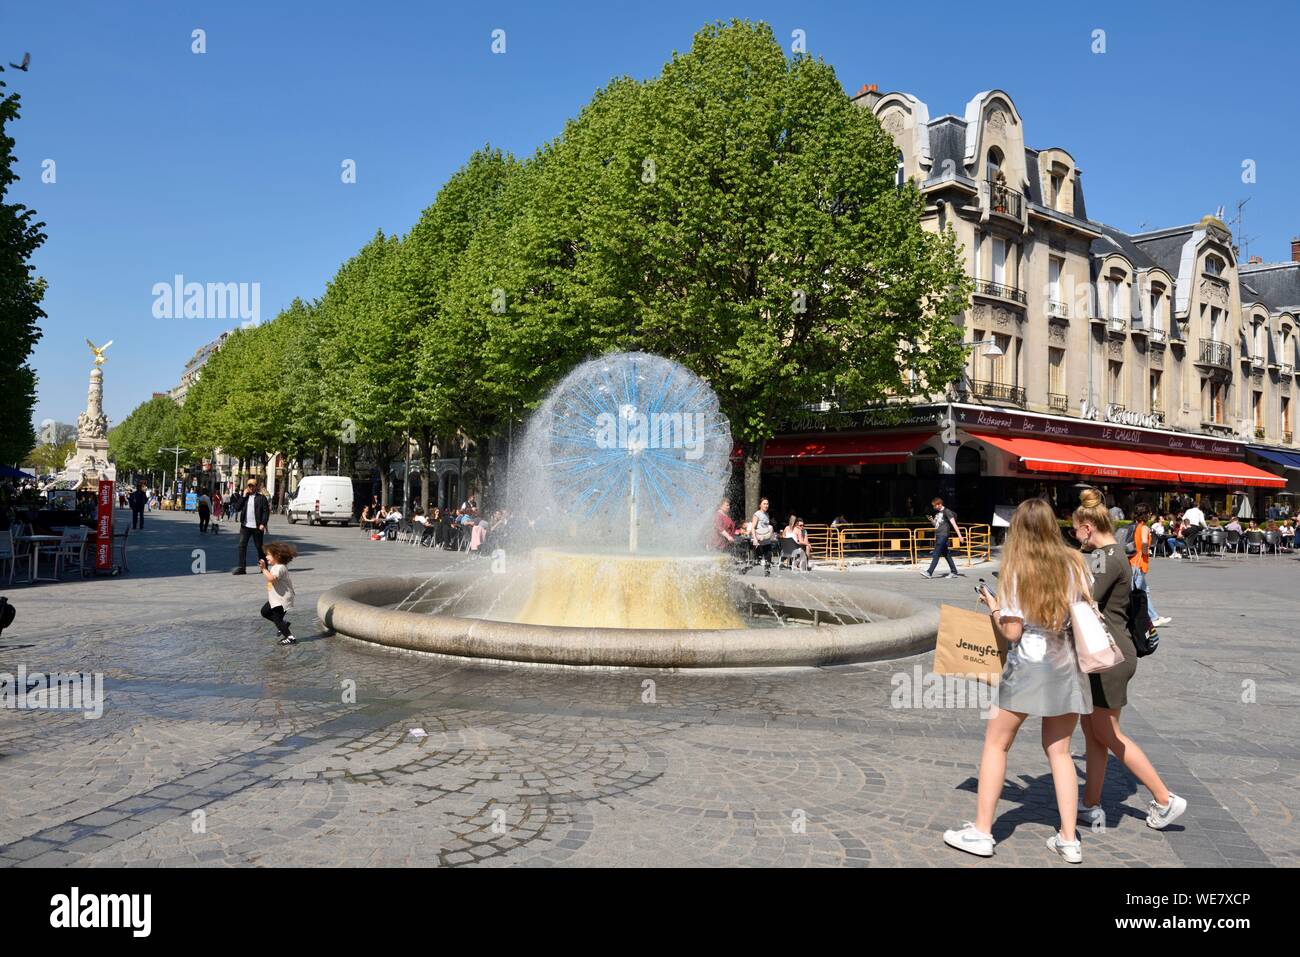 France, Marne, Reims, Place Drouet d'Erlon, fontaine de la solidarité, deux filles à marcher en direction de la fontaine Banque D'Images